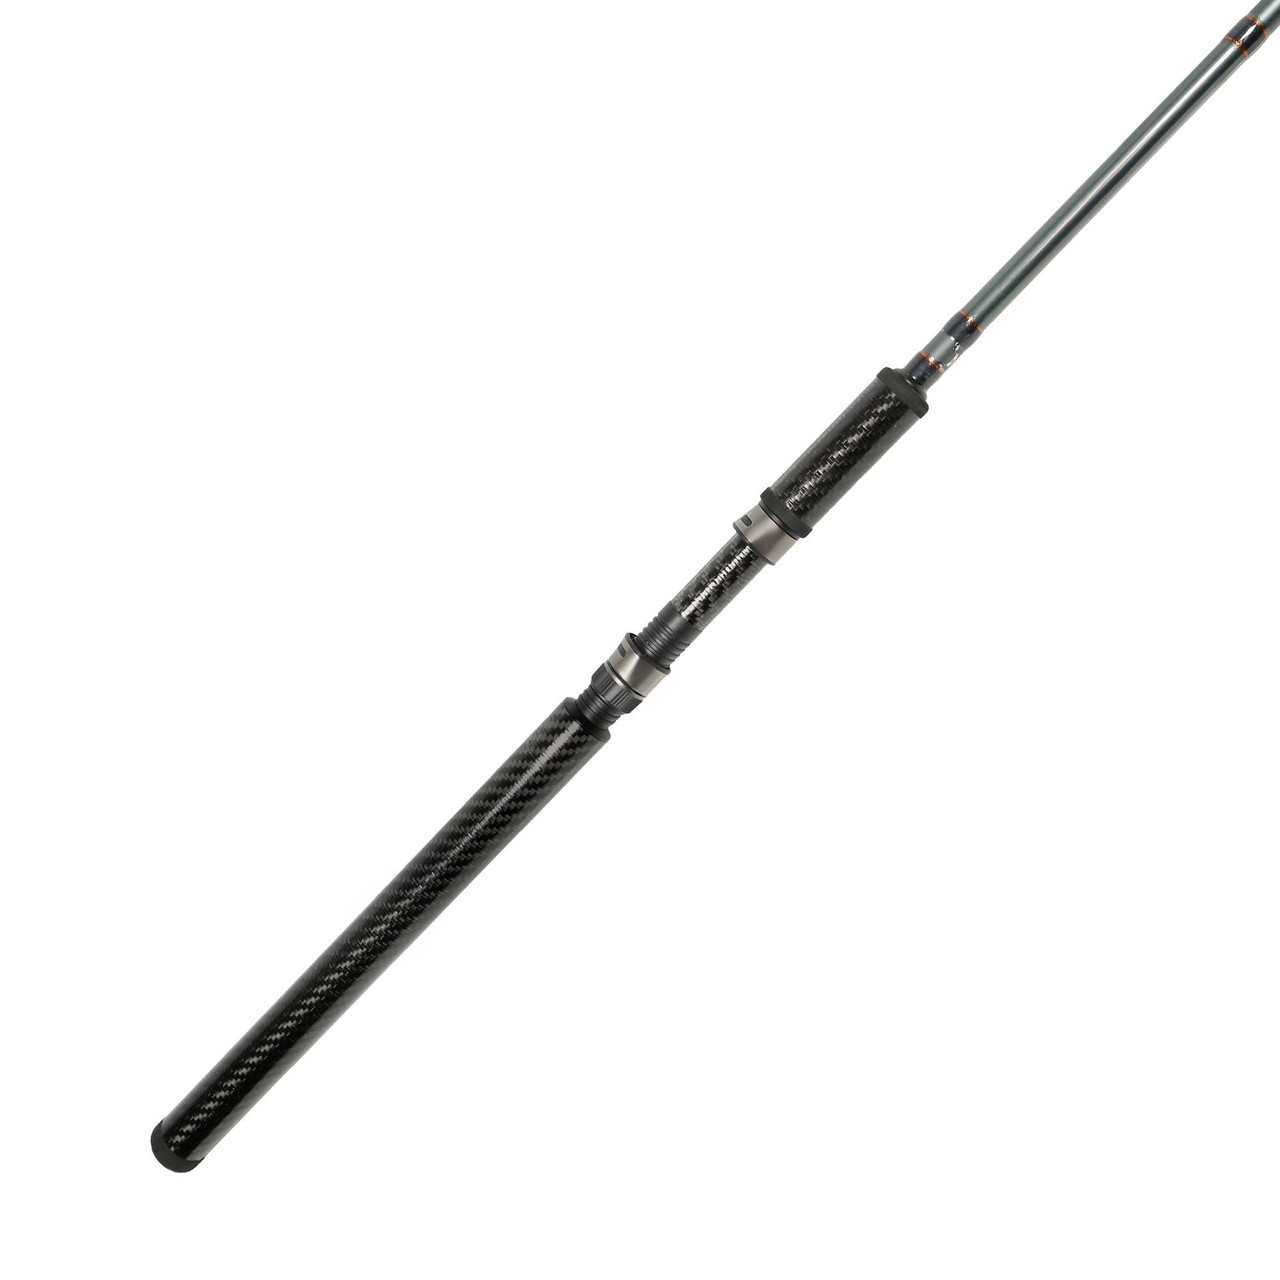 Okuma SST a Cork Grip Rods Spinning 9' 6 T0 10' 6 CHOOSE